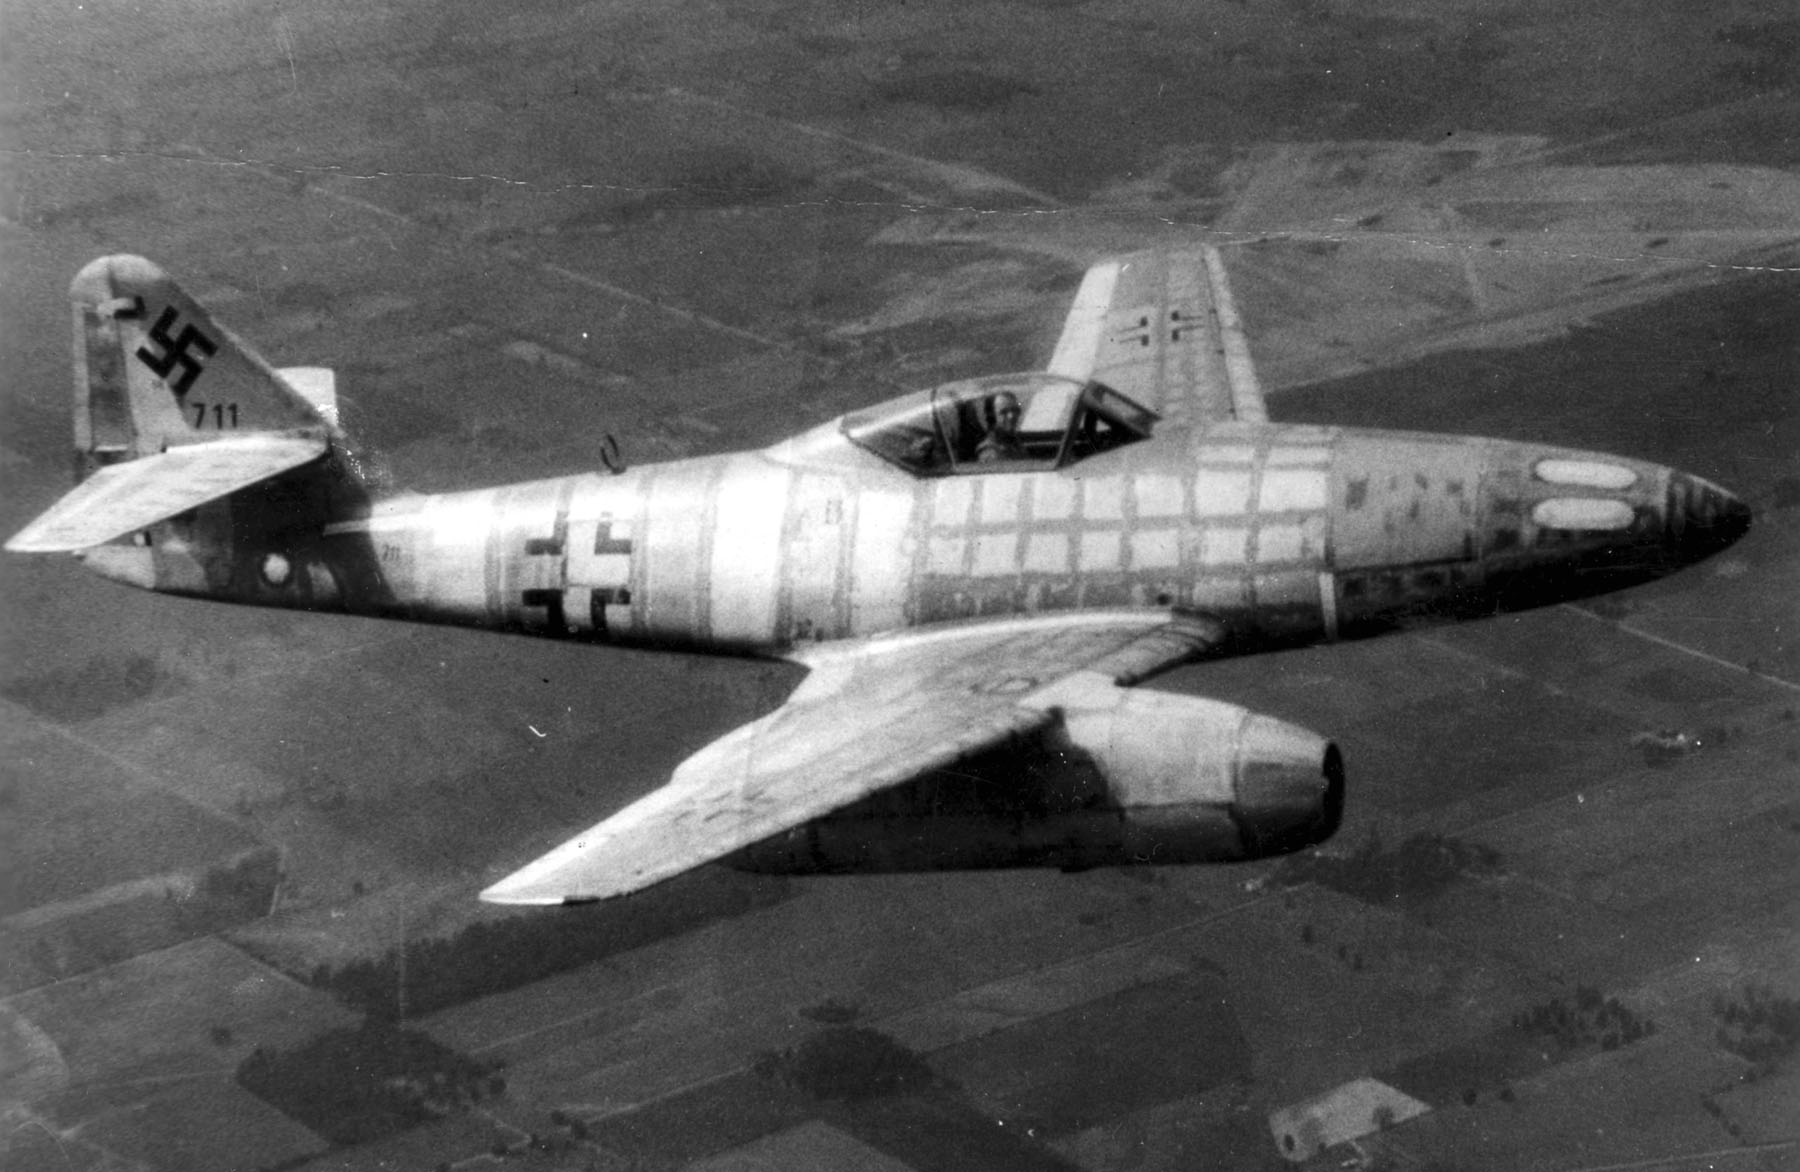 Messerschmitt Me 262 - Wikipedia